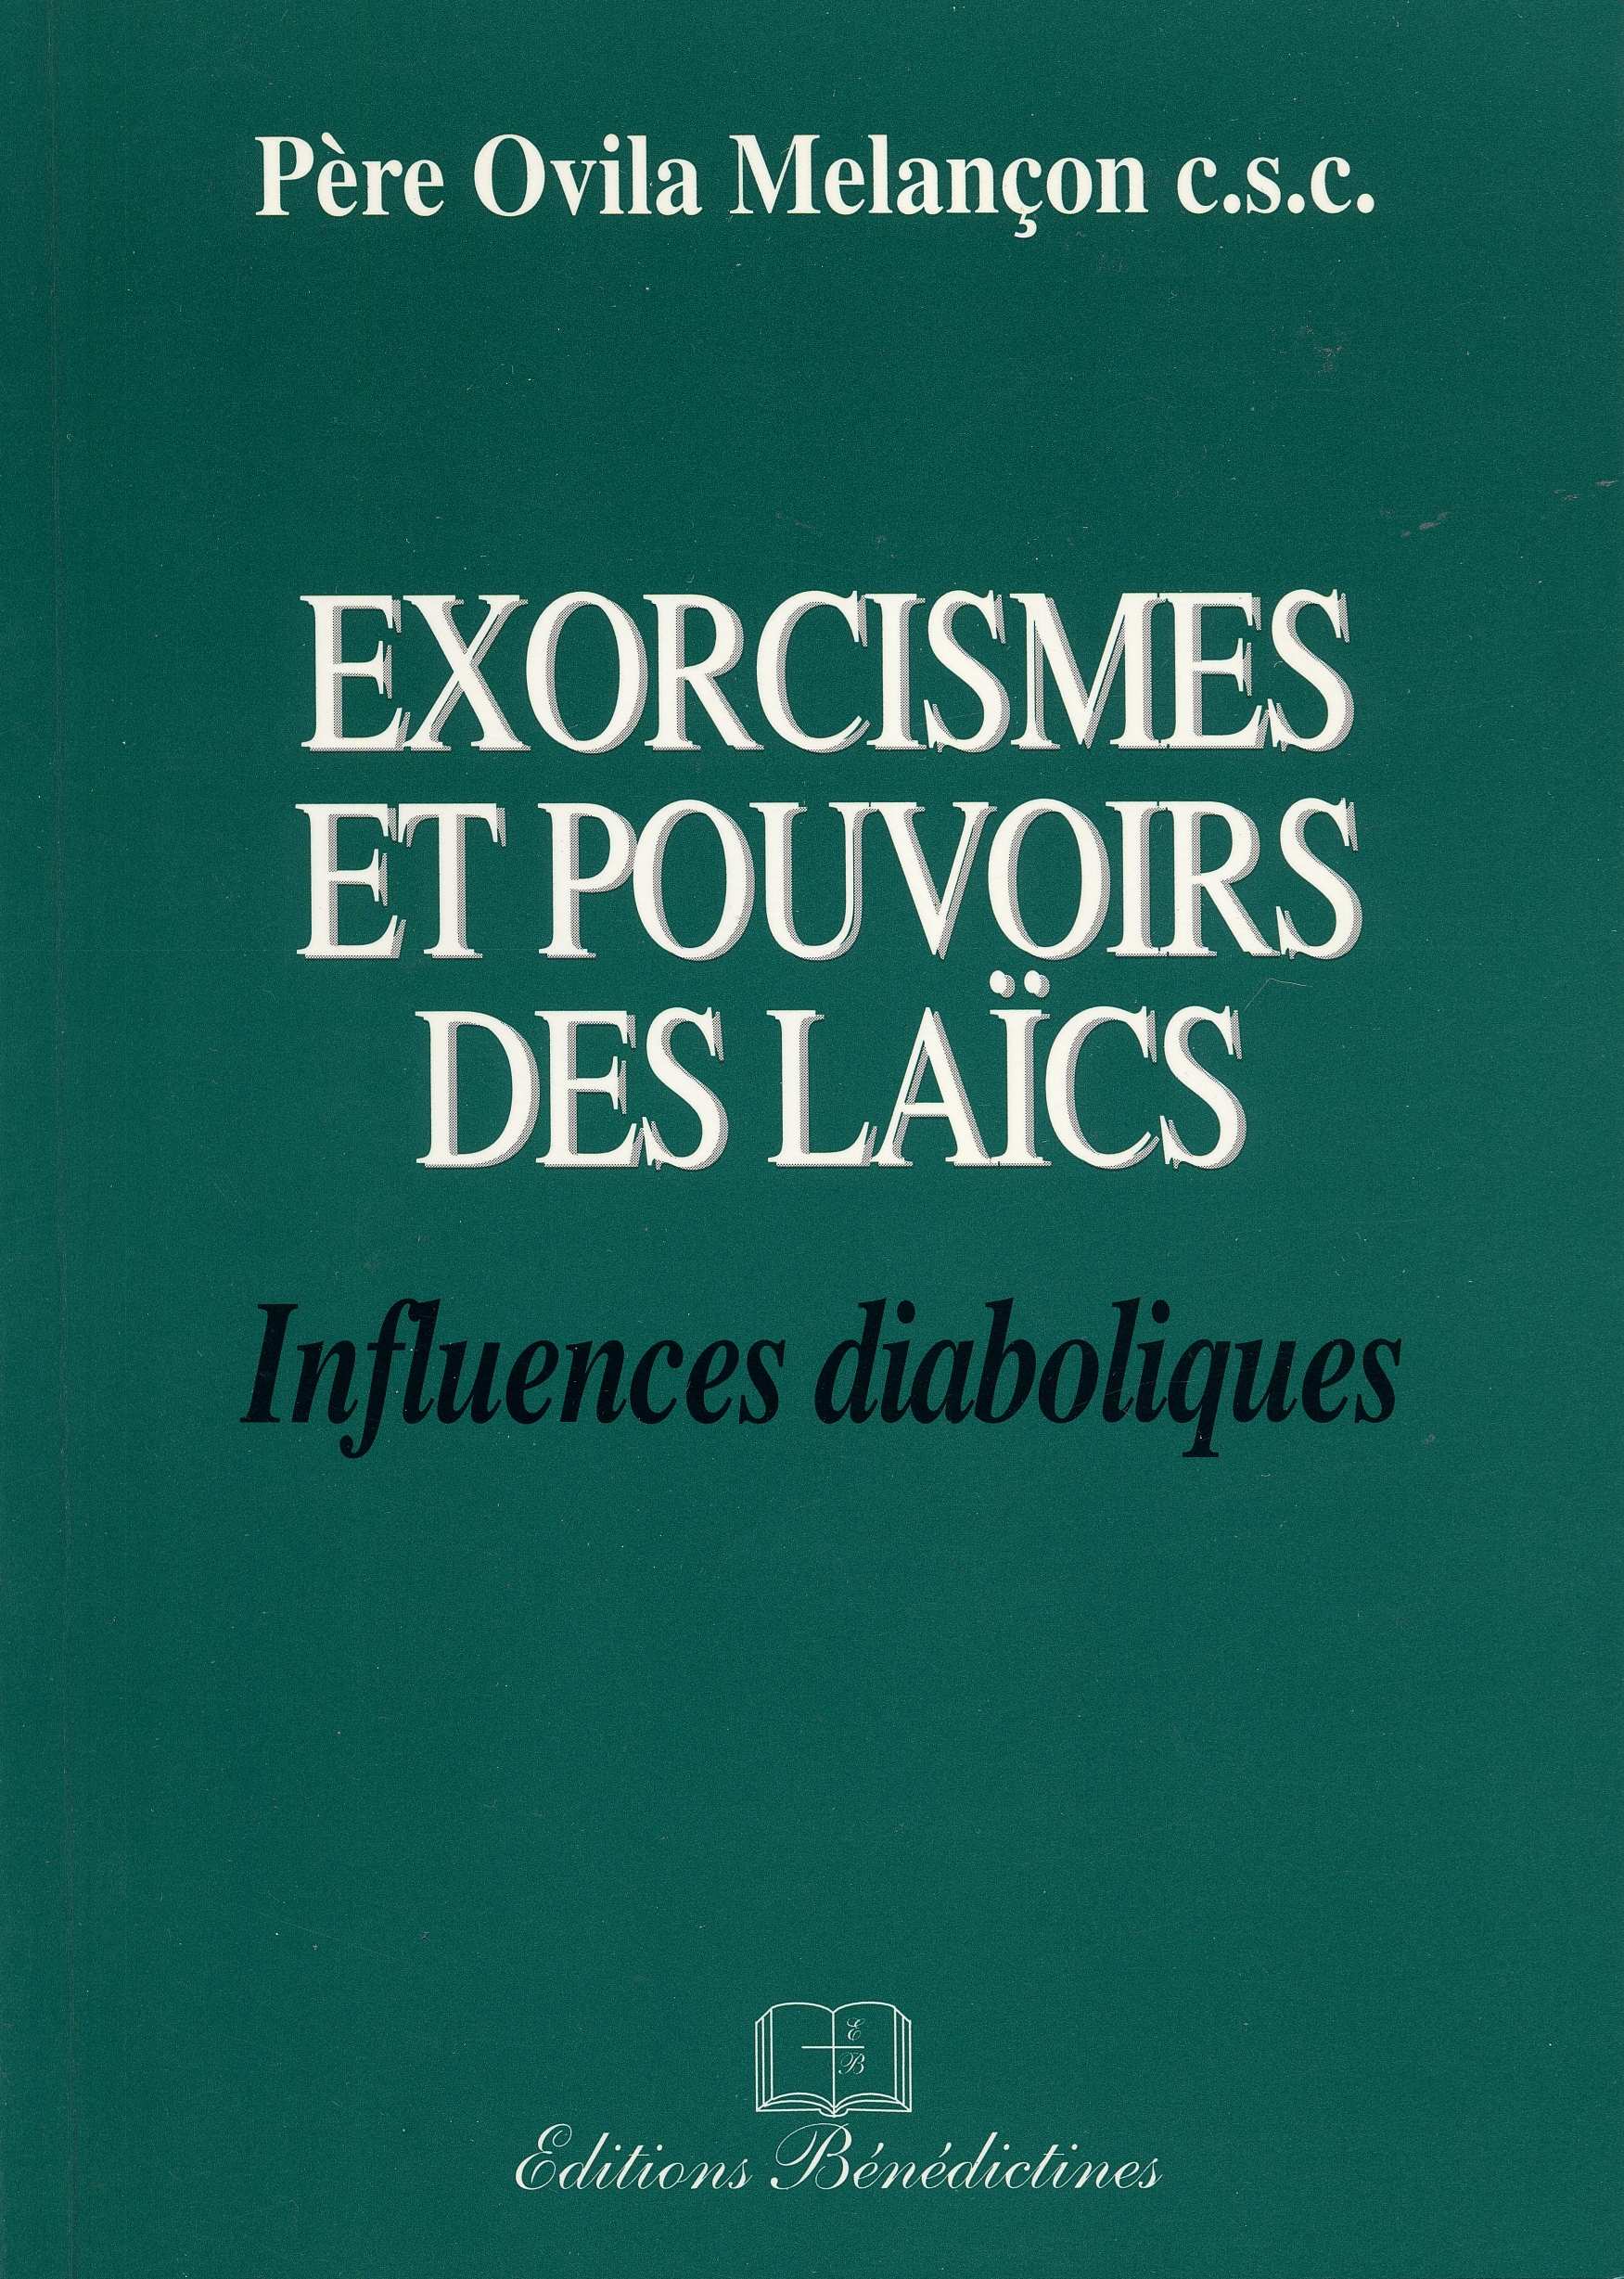 Pages_de_Exorcismes_et_pouvoirs_des_laiques.jpg